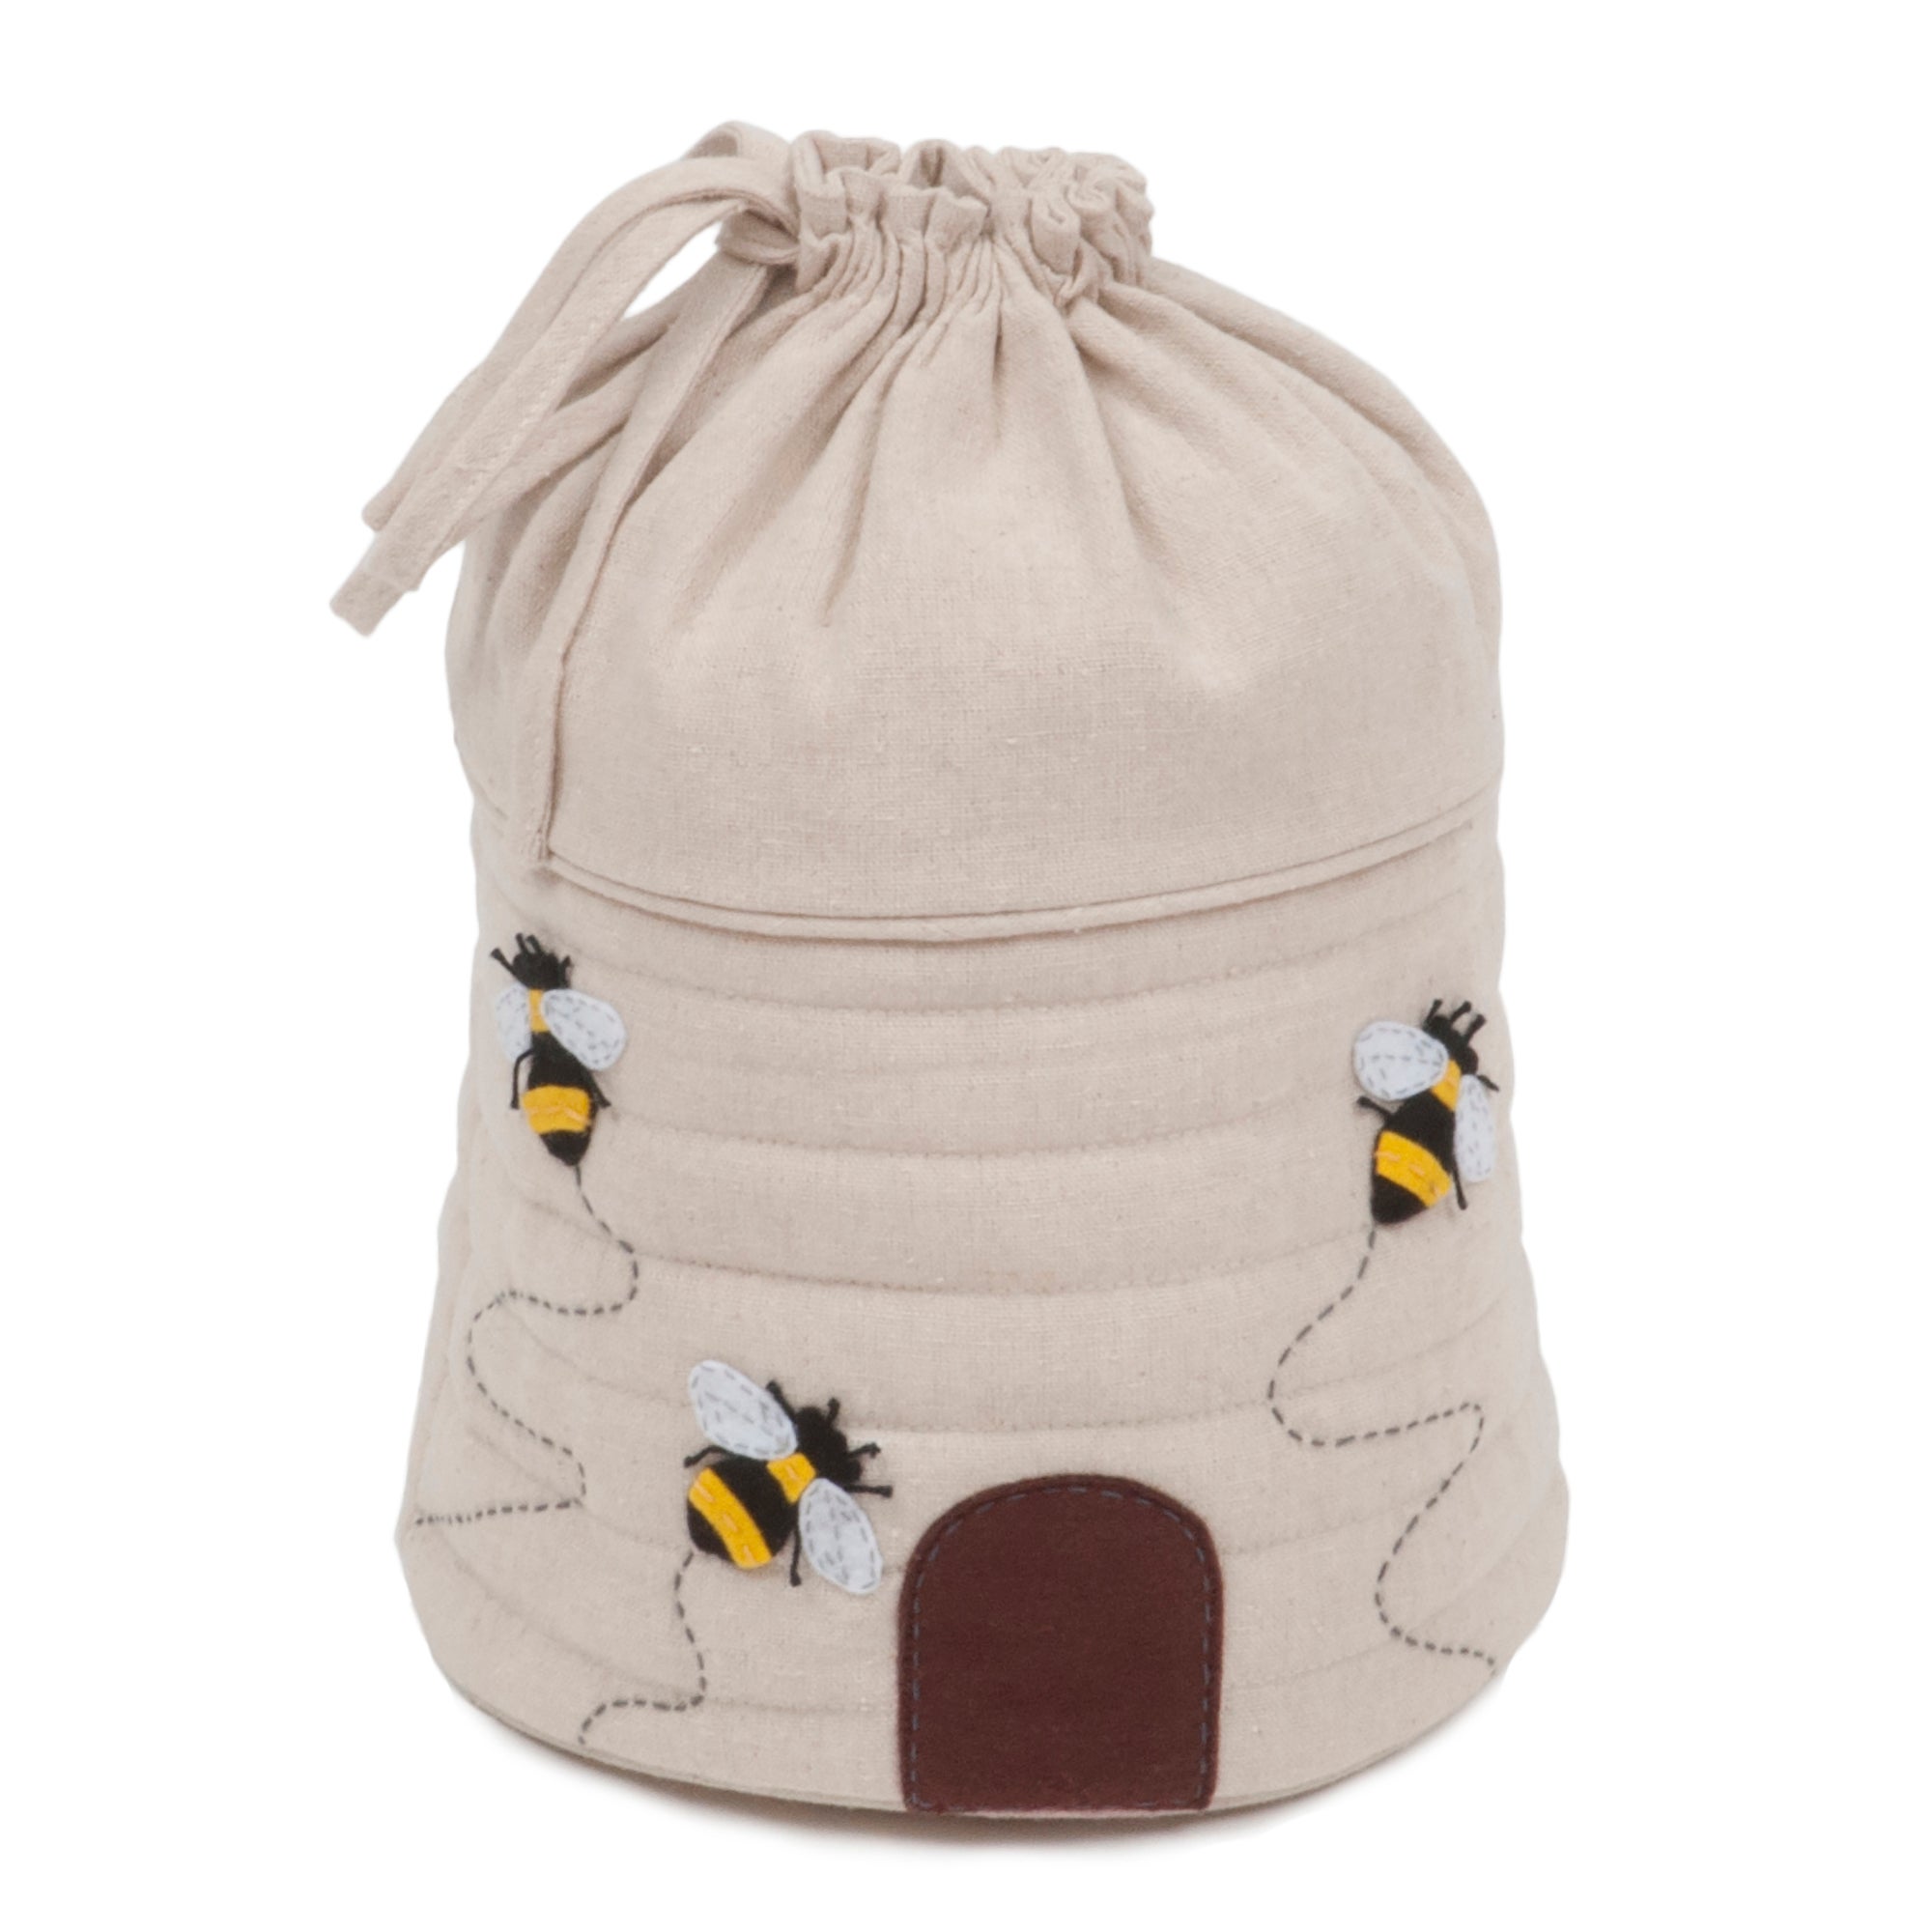 Hobby Gift Bee Hive Round Drawstring Craft Bag Natural